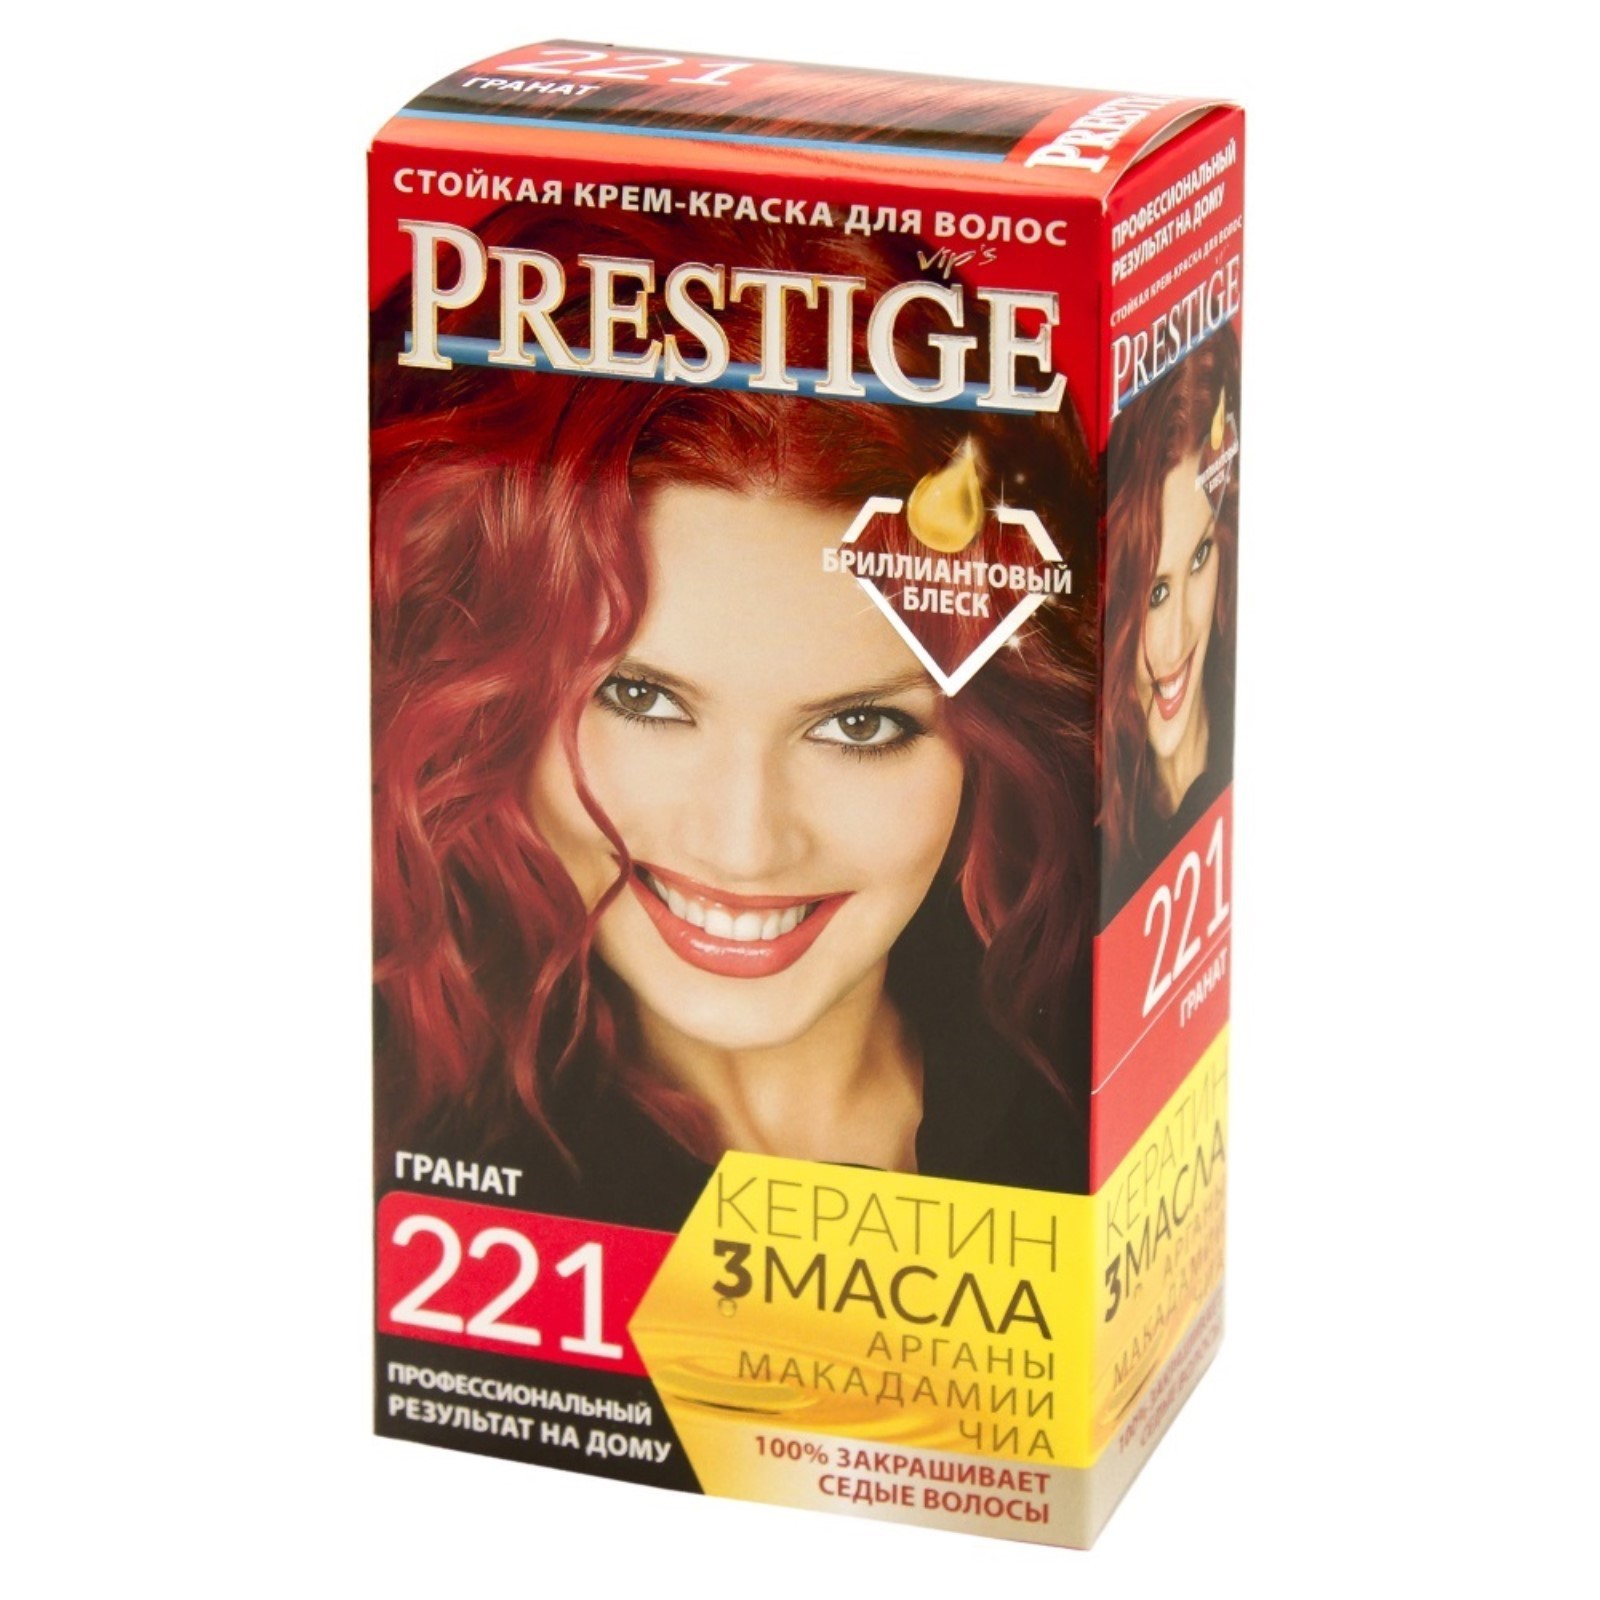 Краска для волос Престиж-221 красный гранат 3 упаковки краска престиж grafit кузнечная глянцевая бордовая 0 9 кг